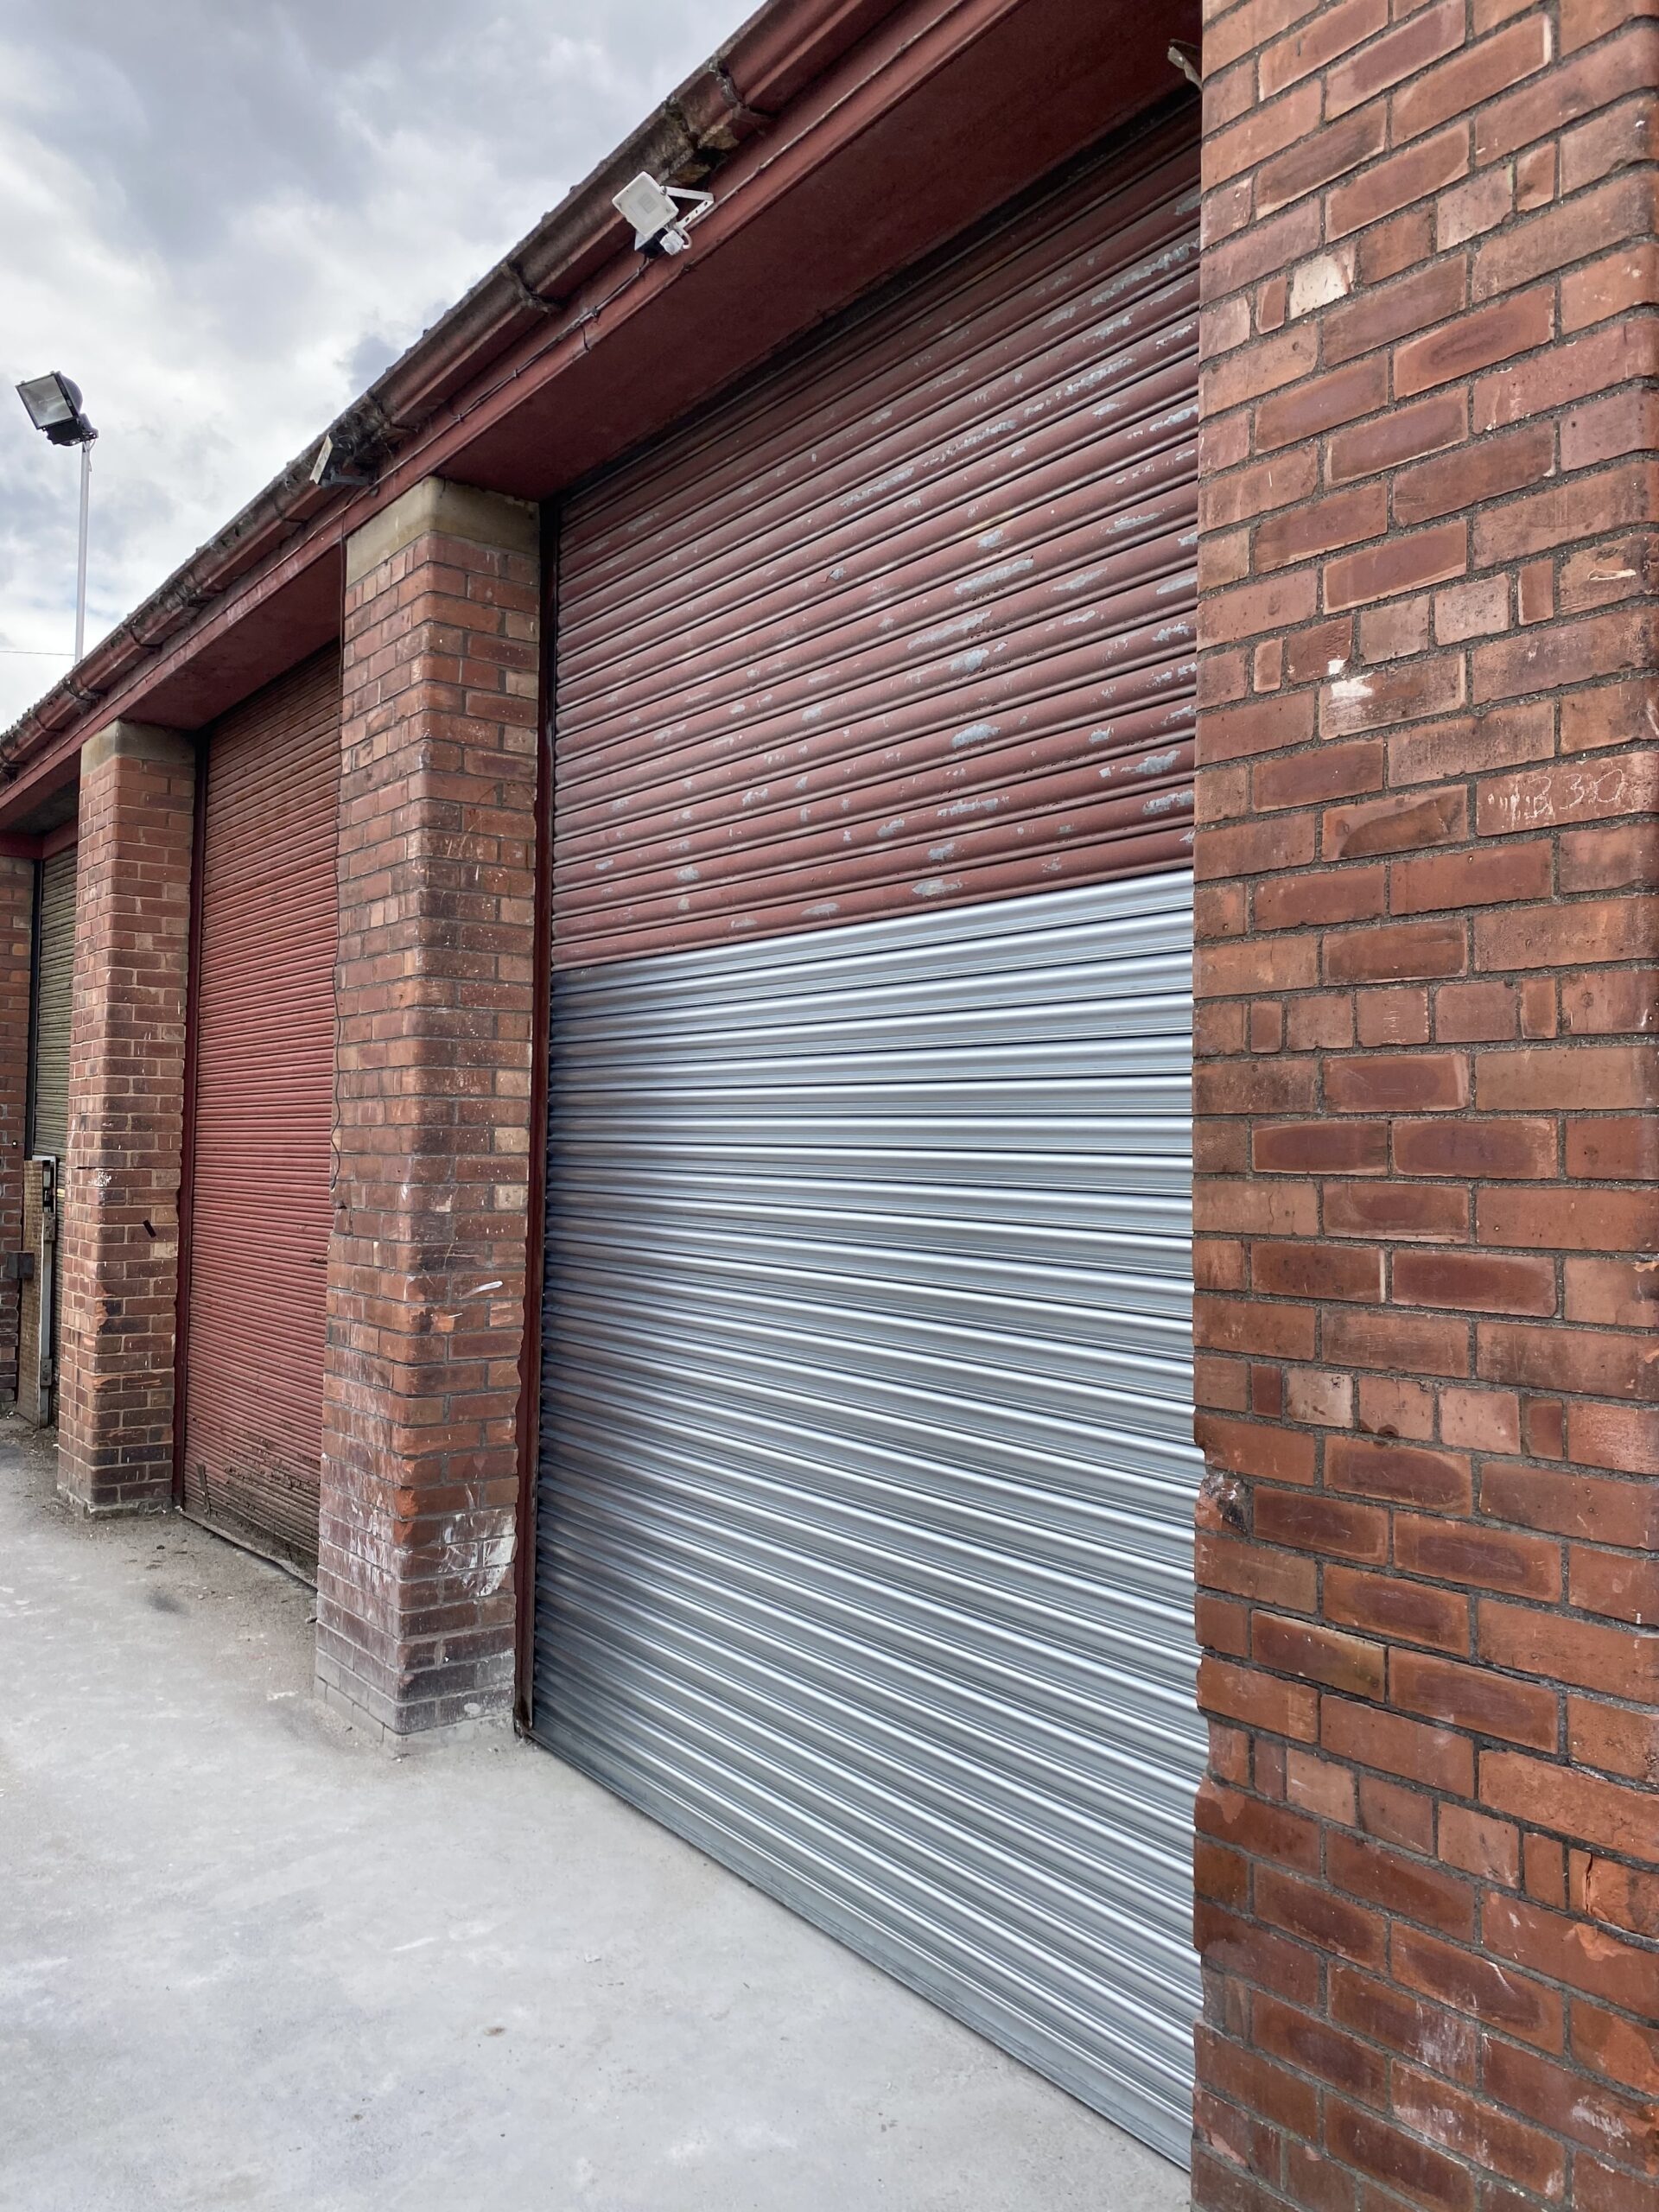 Industrial Doors North West - Specialist in Industrial Doors, Roller Shutter Doors & Garage Doors